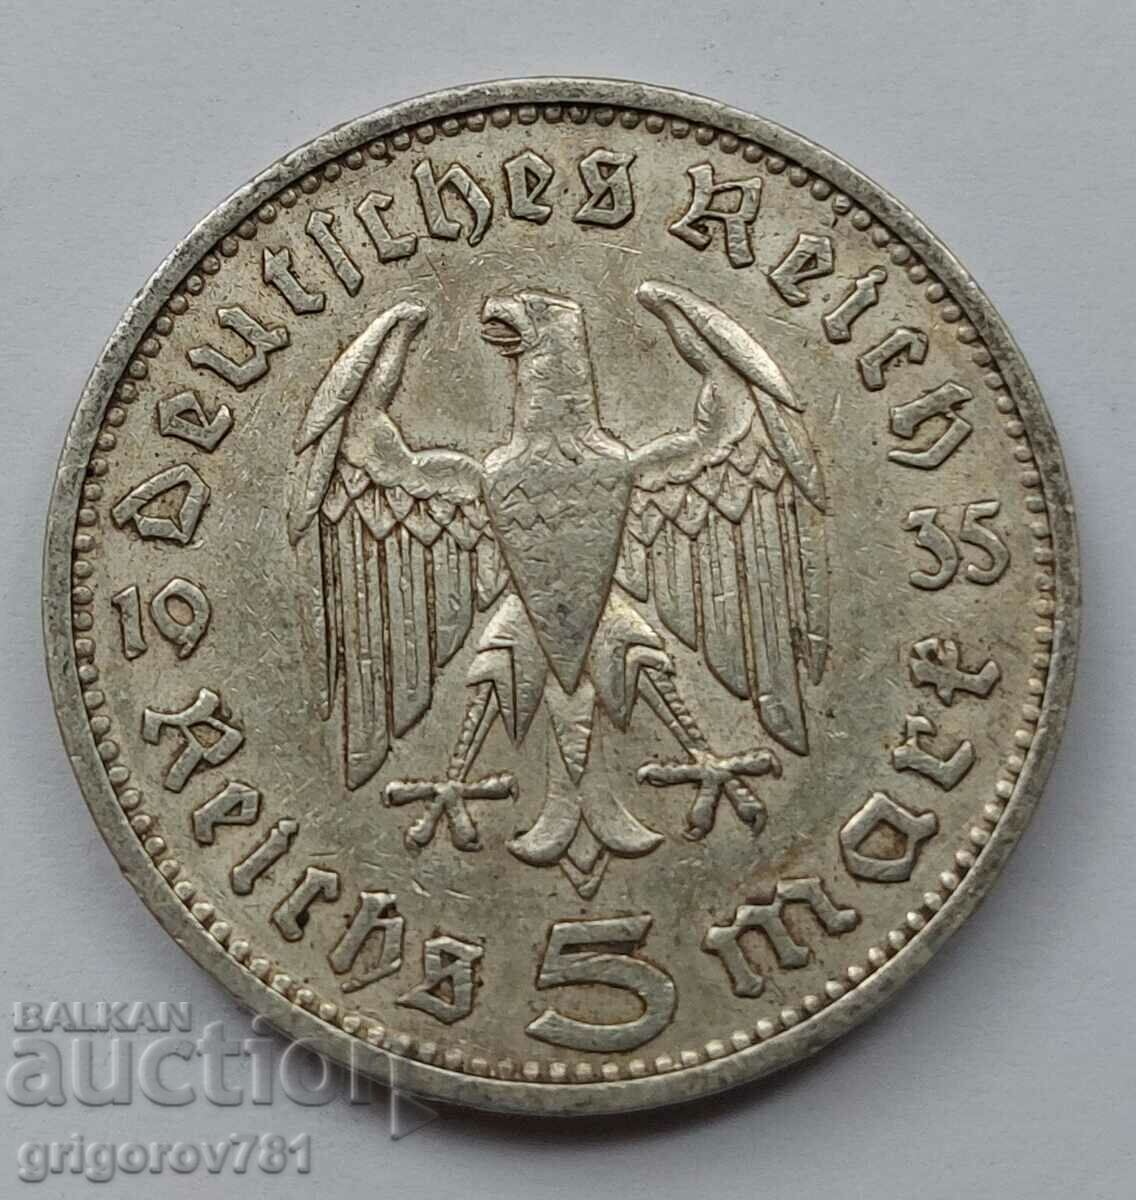 5 Mark Silver Γερμανία 1935 F III Reich Ασημένιο νόμισμα #71